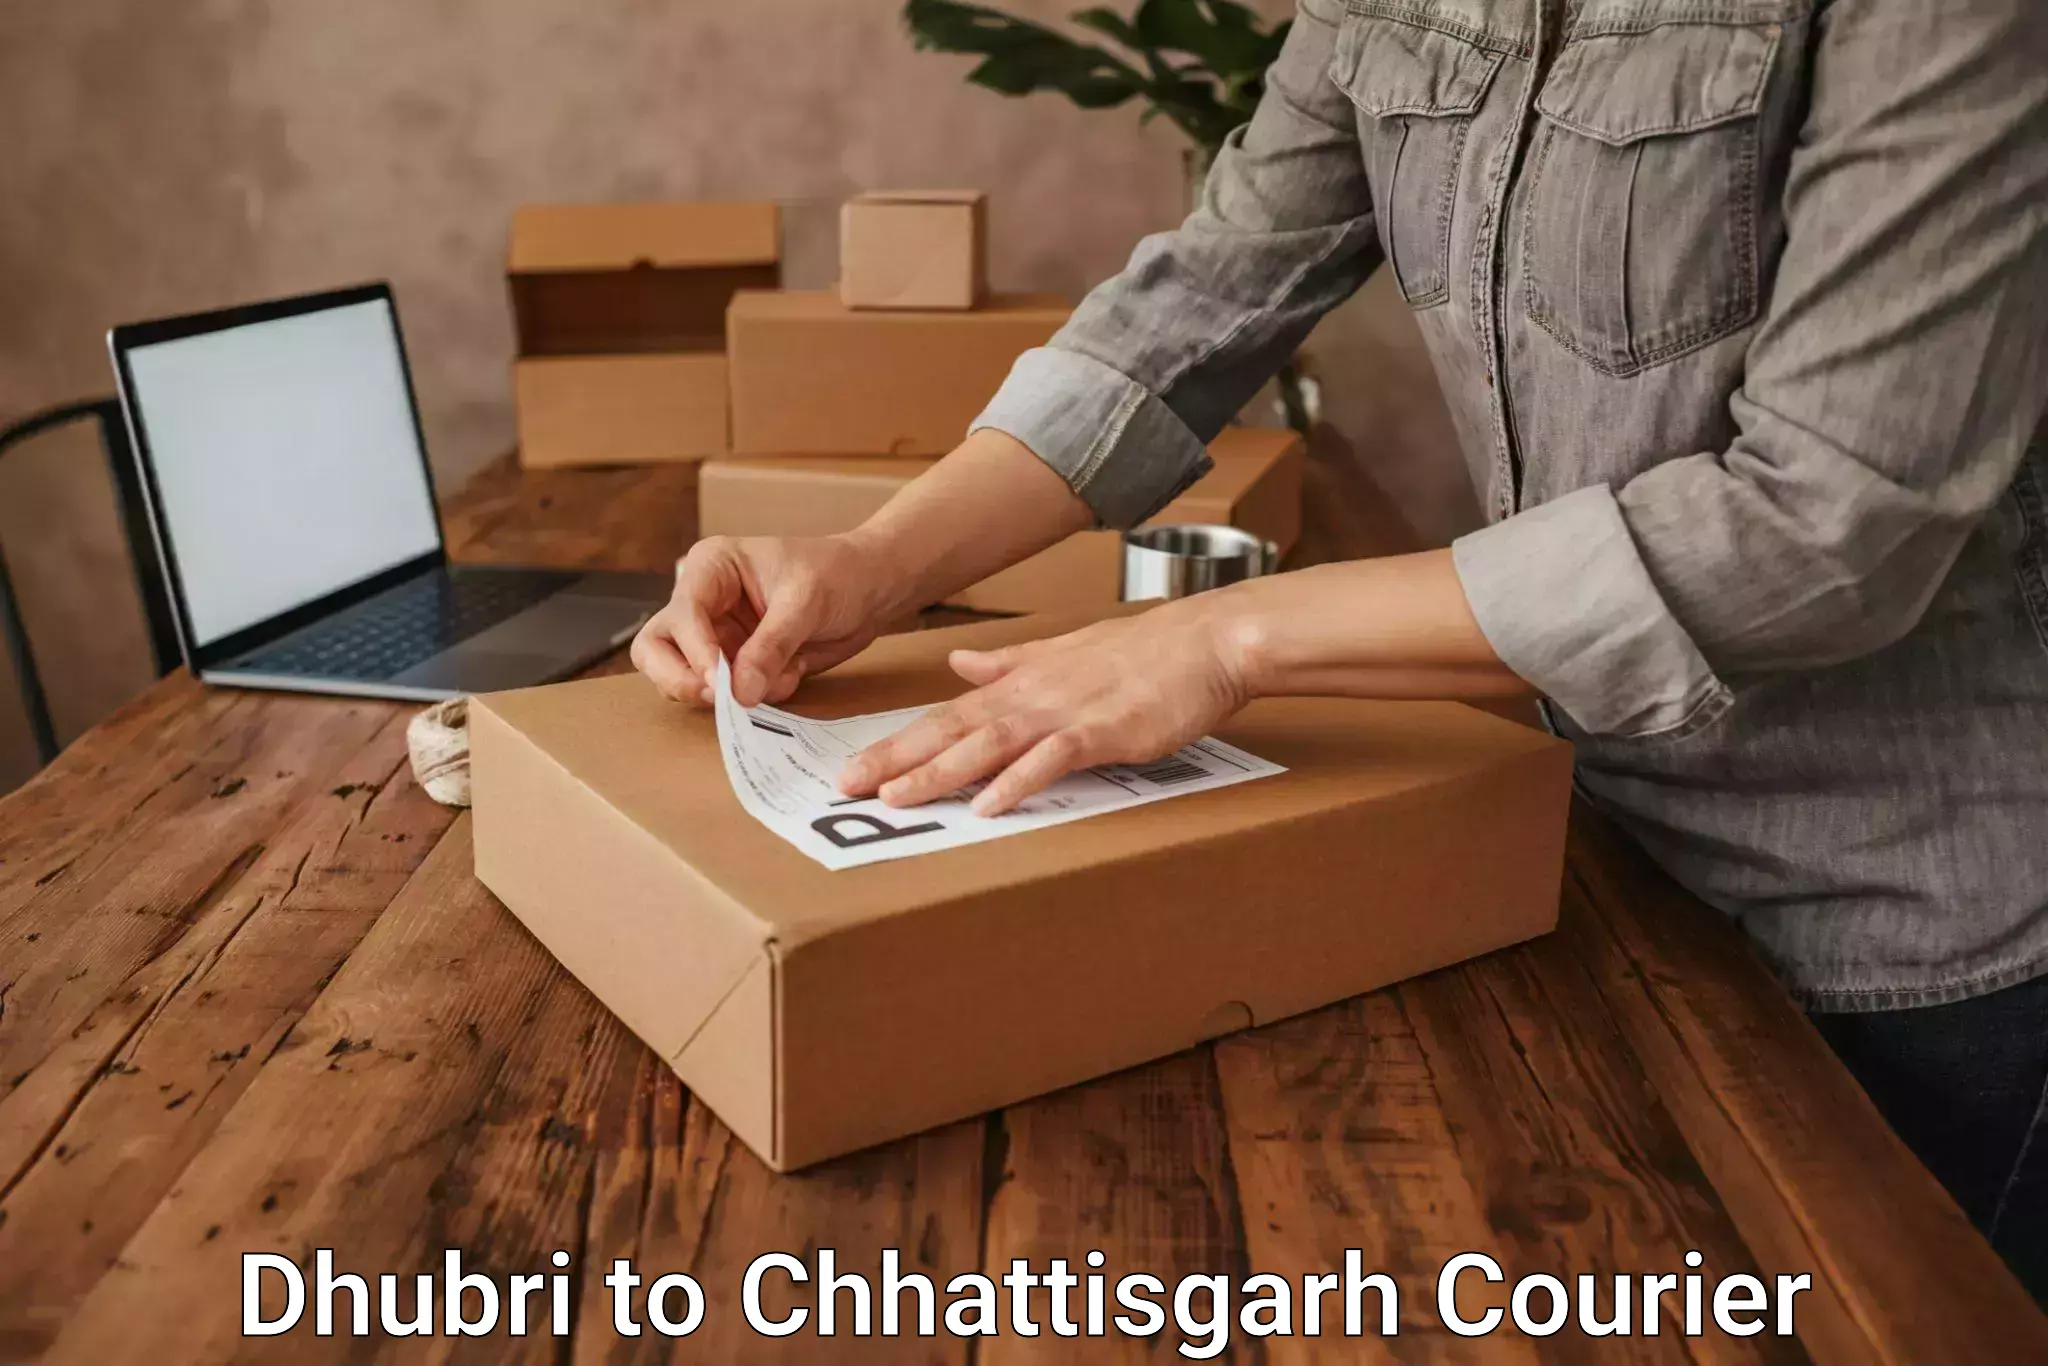 Courier service comparison Dhubri to Sakti